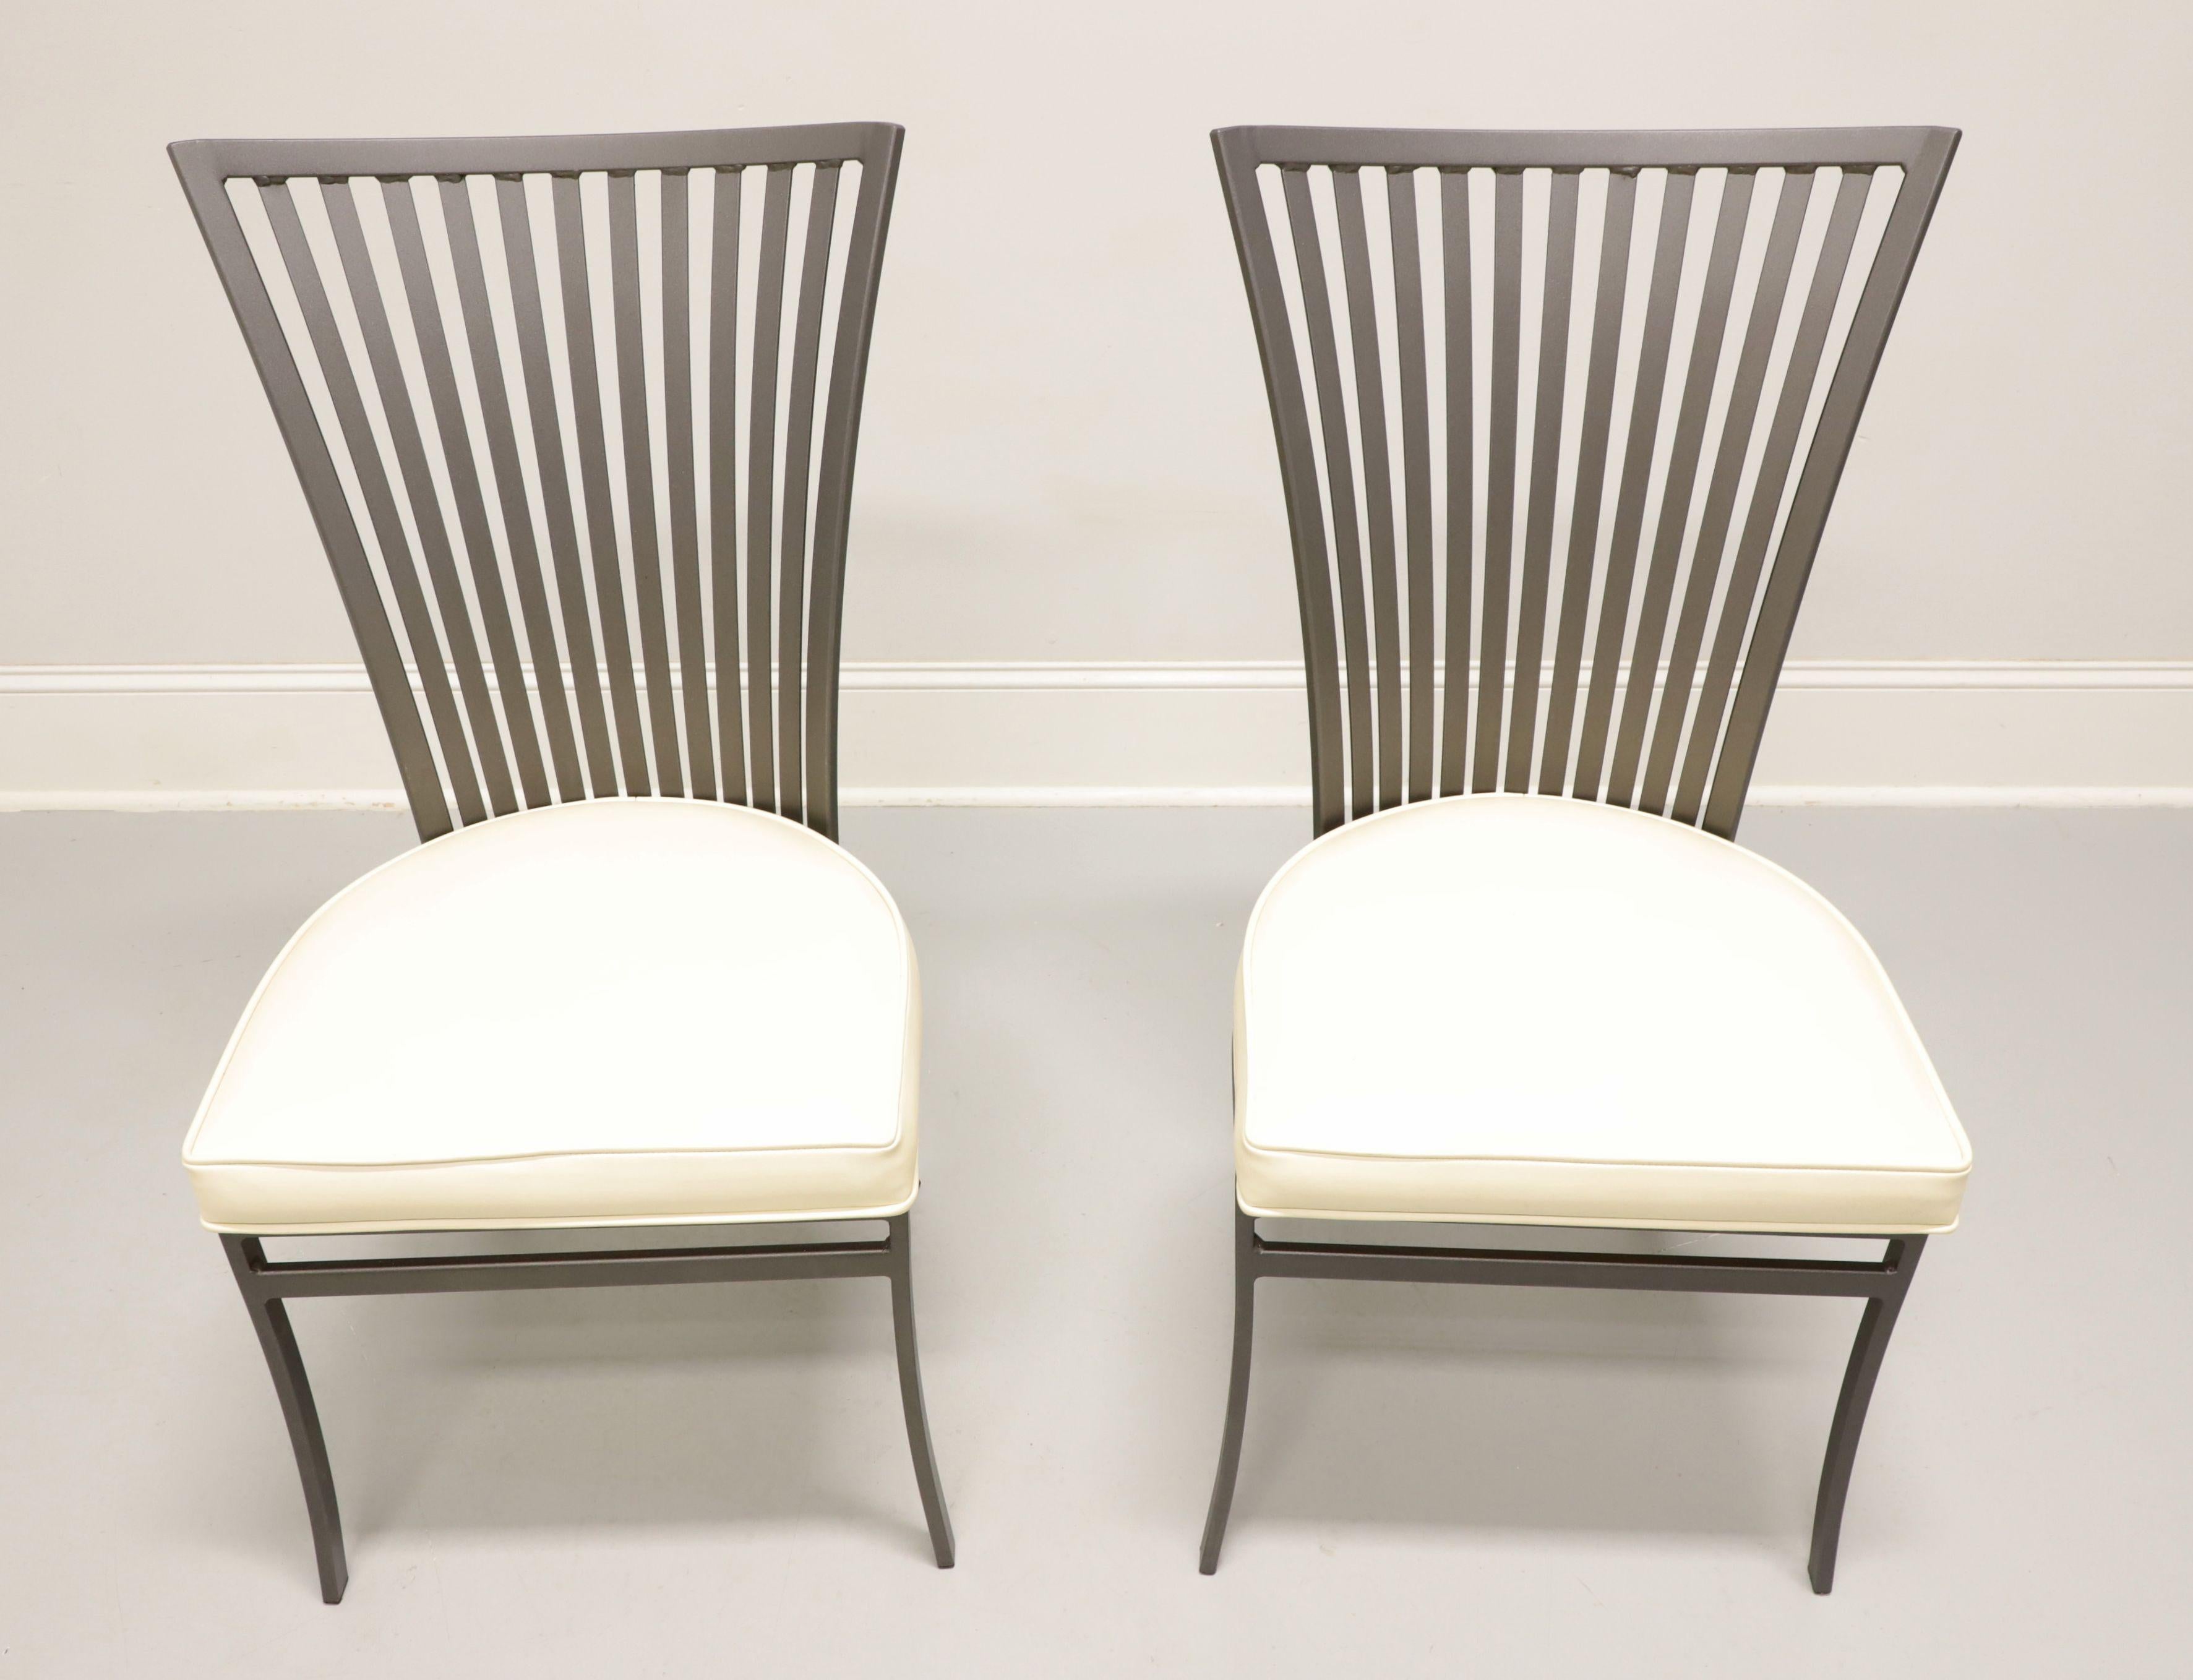 Ein Paar stählerne Terrassenstühle im Stil der Moderne des 20. Jahrhunderts, entworfen von Arthur Umanoff für Shaver-Howard. Metallgestell aus Stahl, grau lackiert, ausgestellte Rückenlehne mit geradem Kamm und Spindeln, gepolsterter Sitz aus weißem